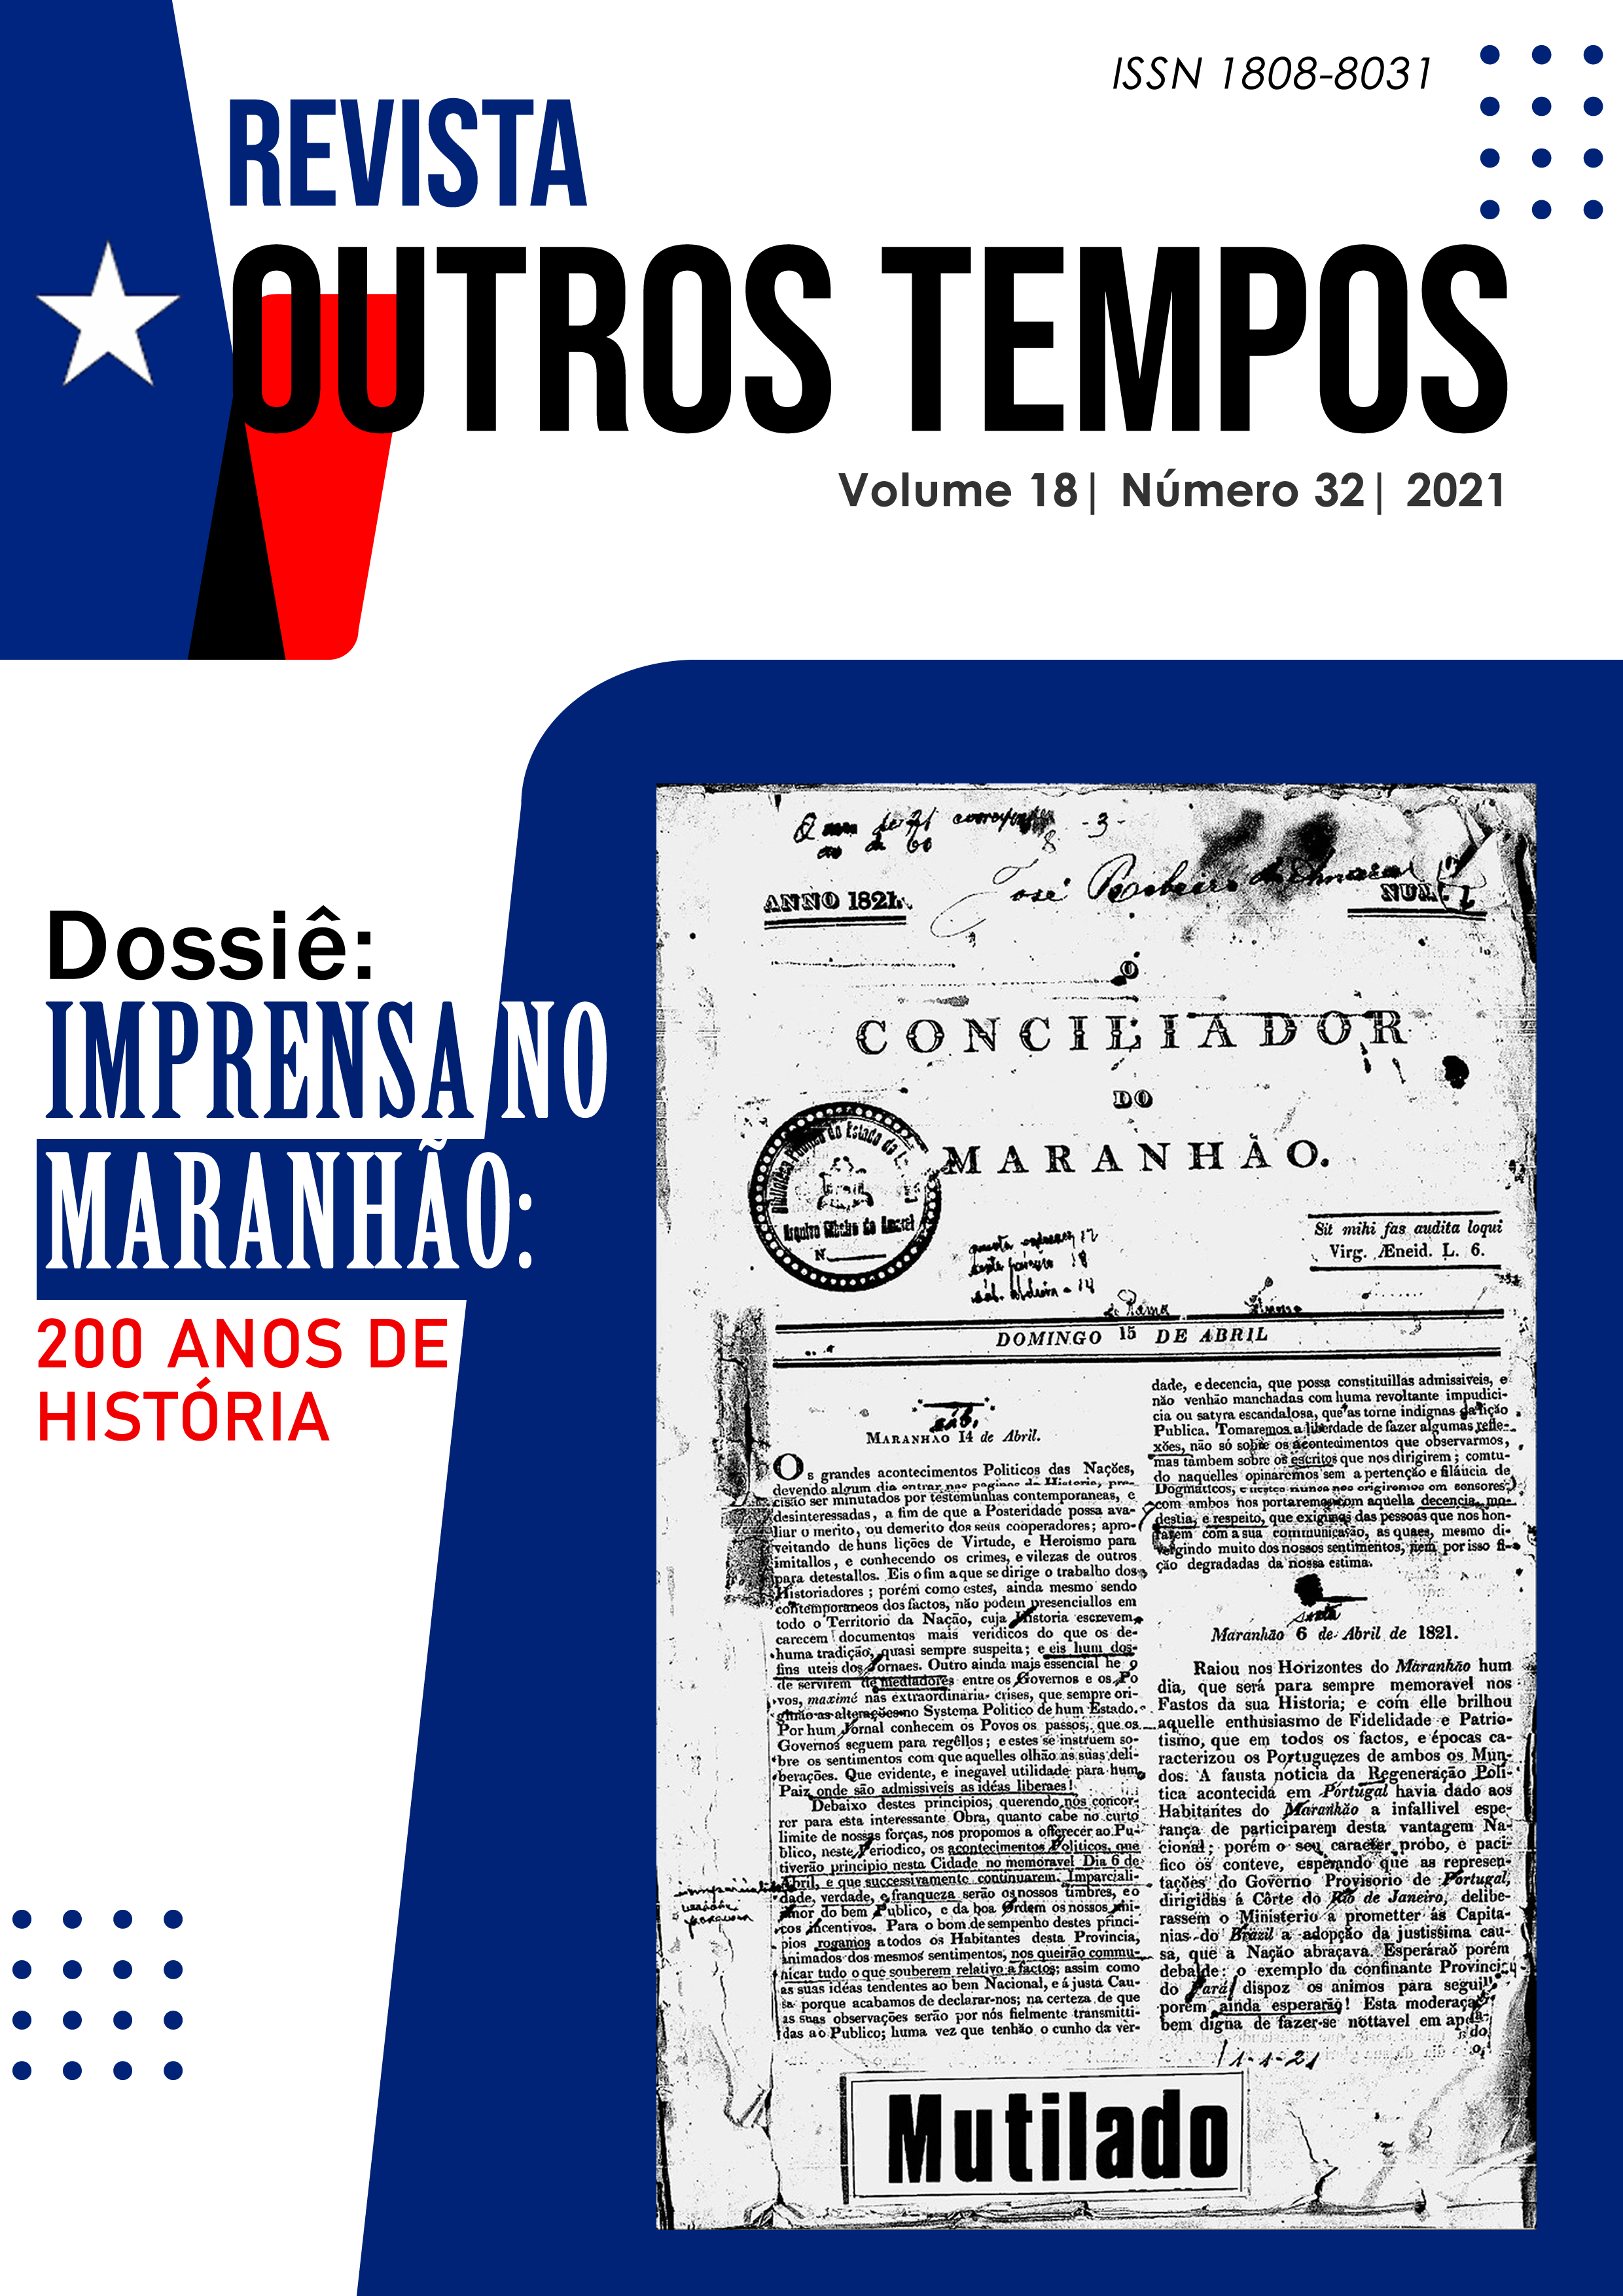 					Visualizar v. 18 n. 32 (2021): DOSSIÊ - Imprensa no Maranhão: 200 anos de história
				